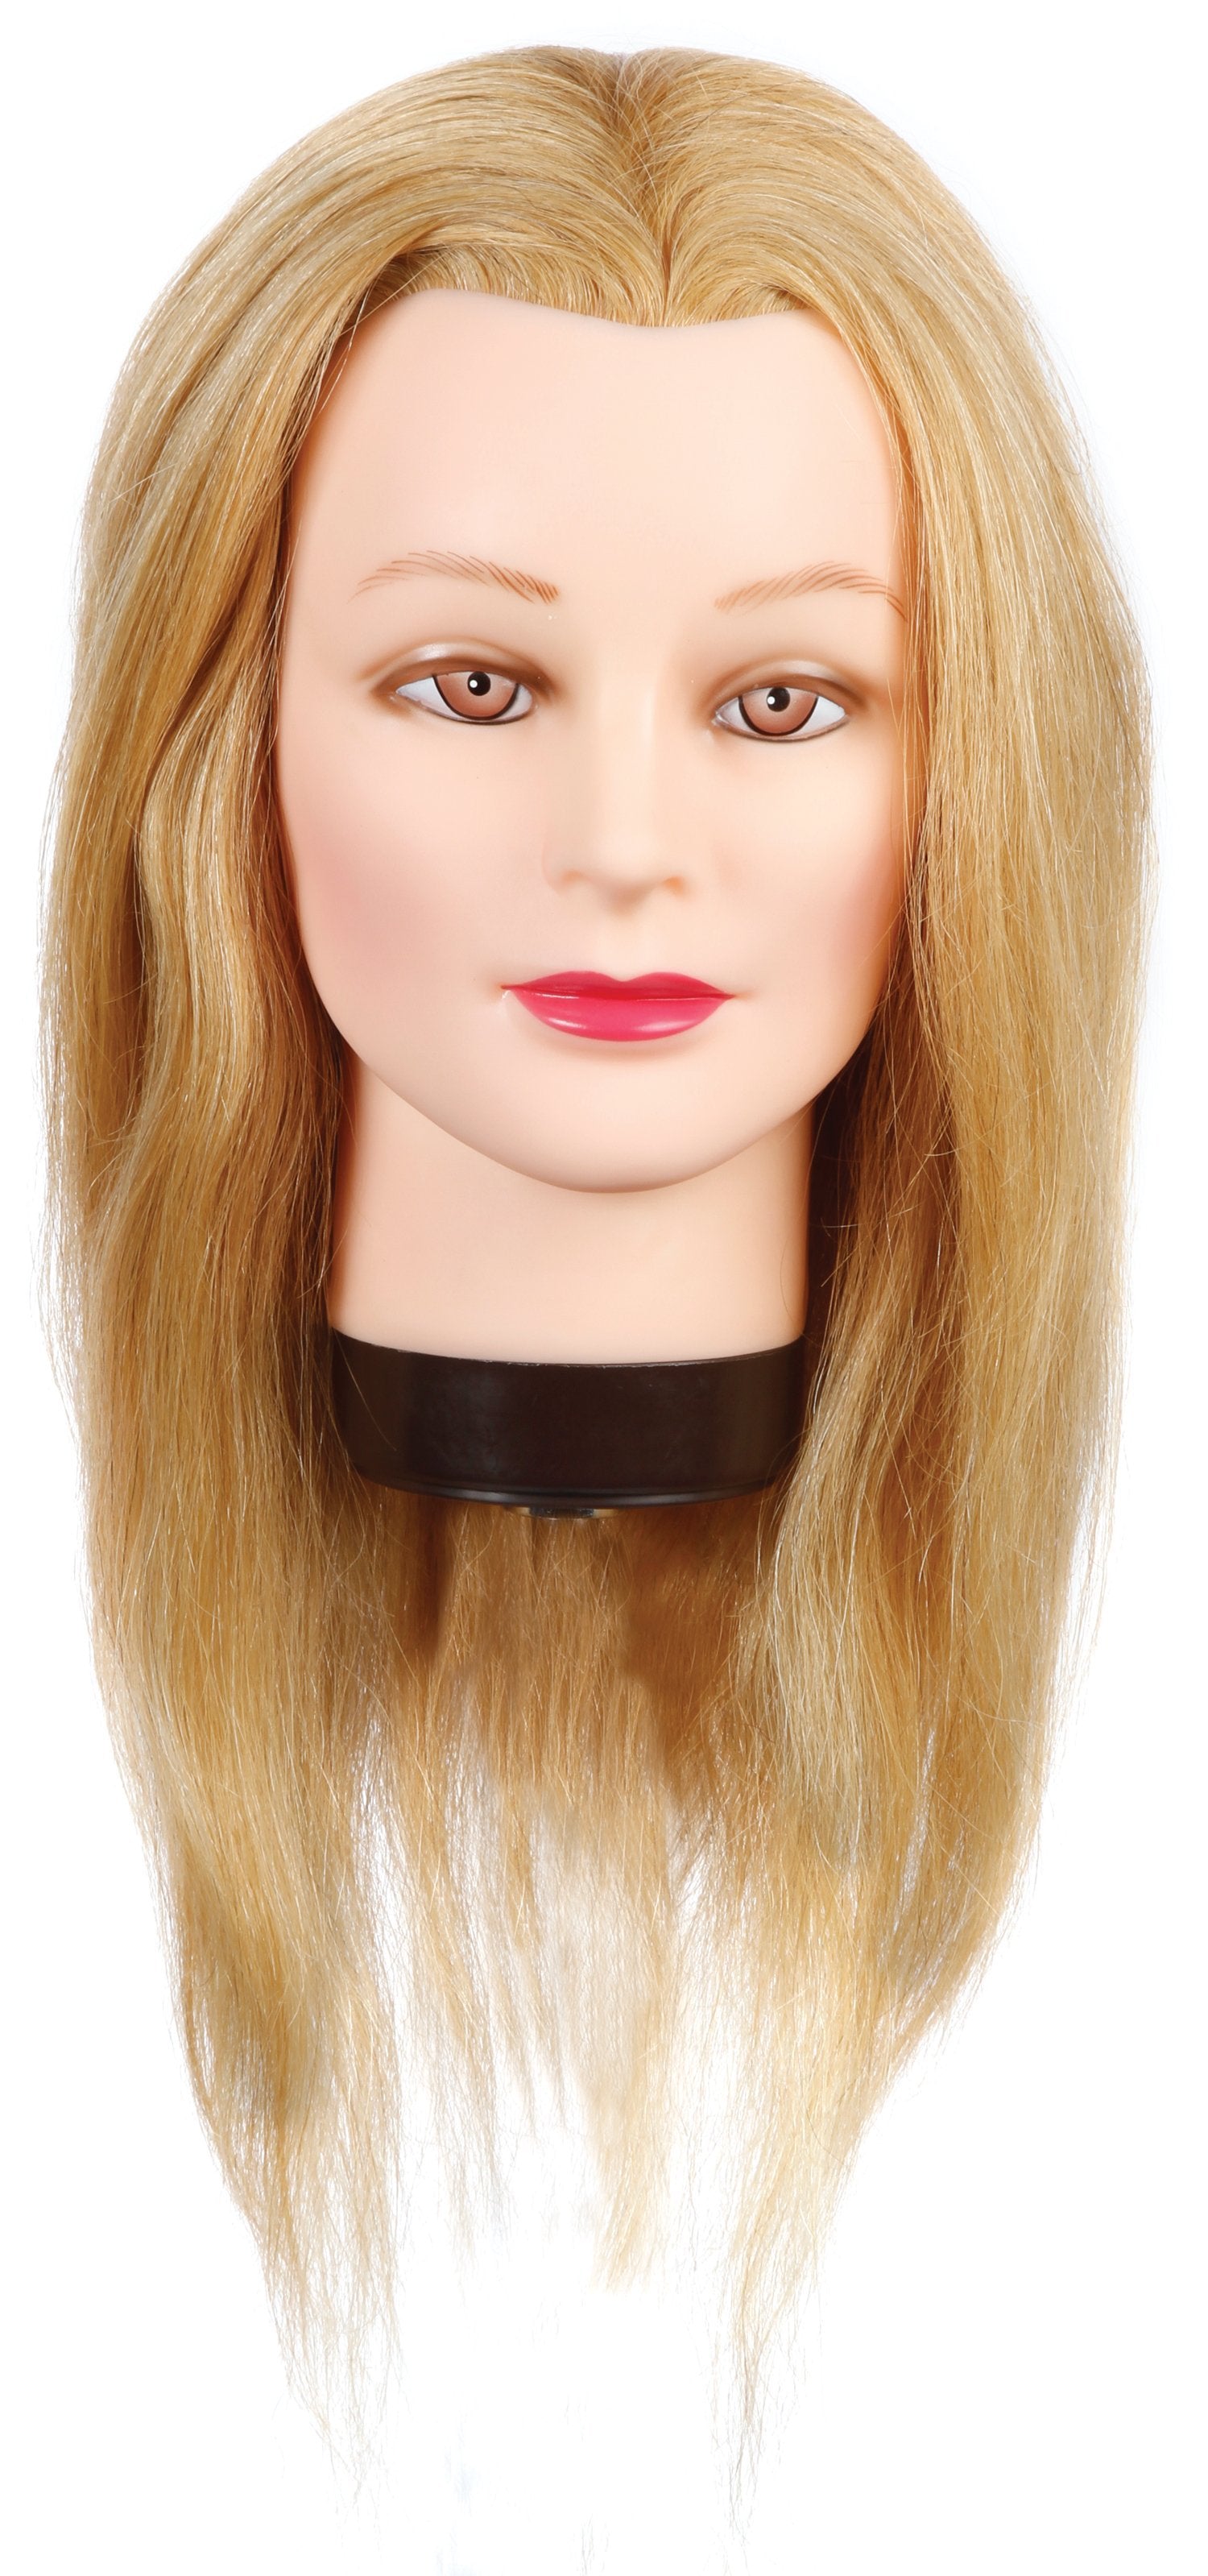 Cindy [80% Human Hair Mannequin]